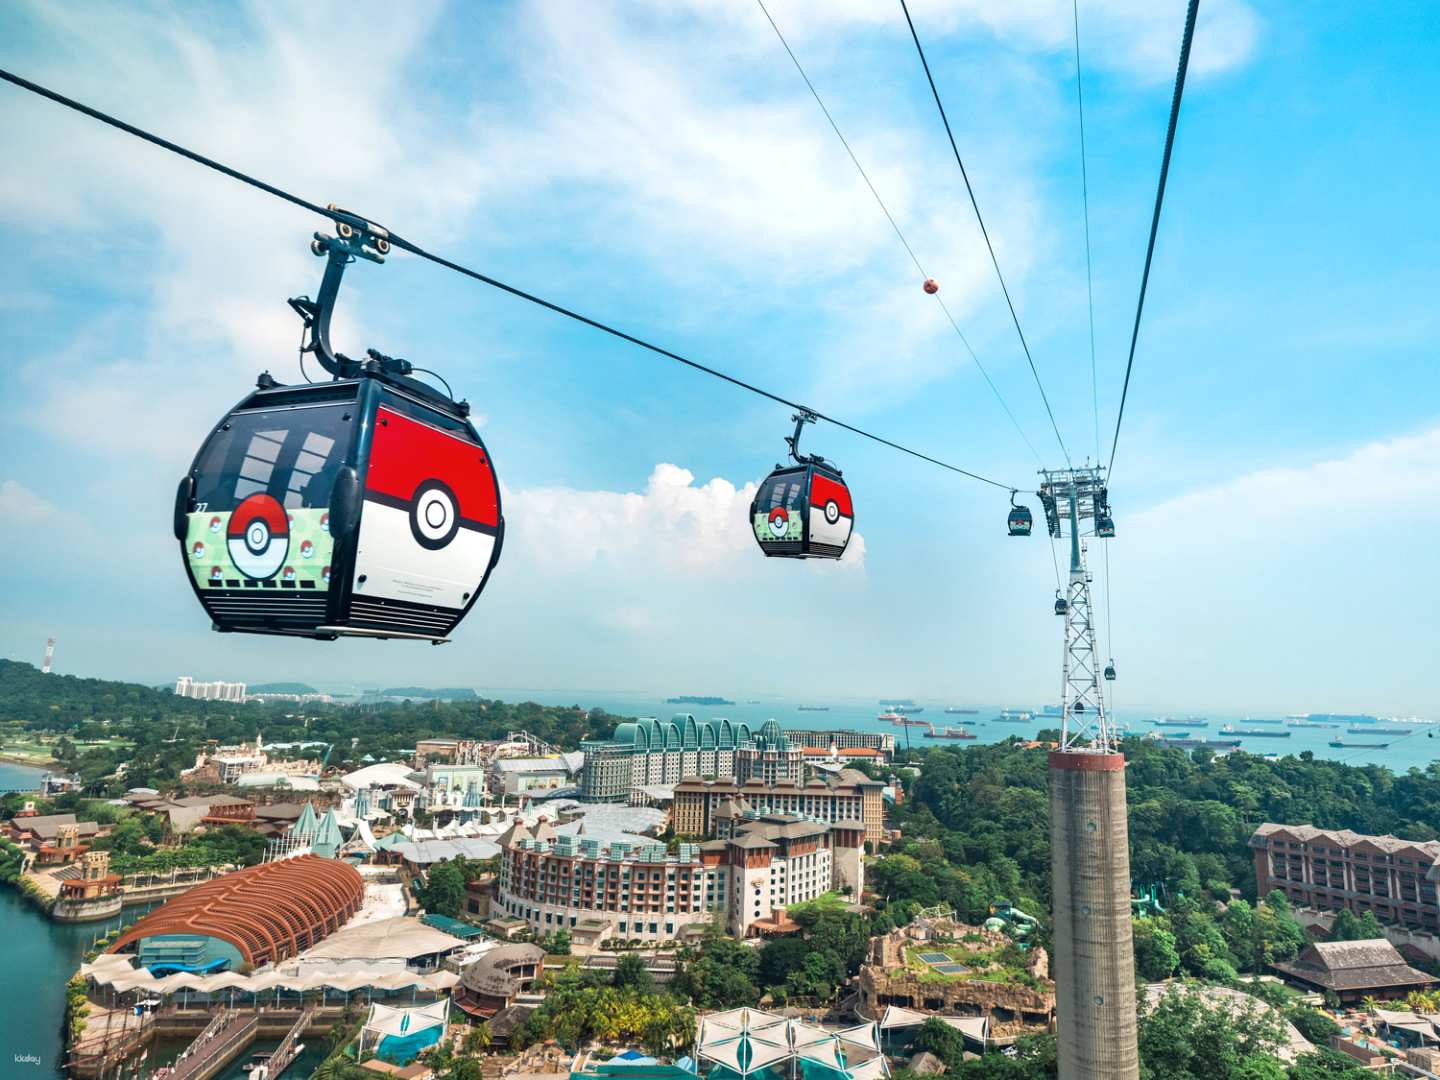 新加坡-聖淘沙纜車天際通車票Cable Car Sky Pass| 花柏山和聖淘沙線| 寶可夢精靈球車廂慶祝50週年